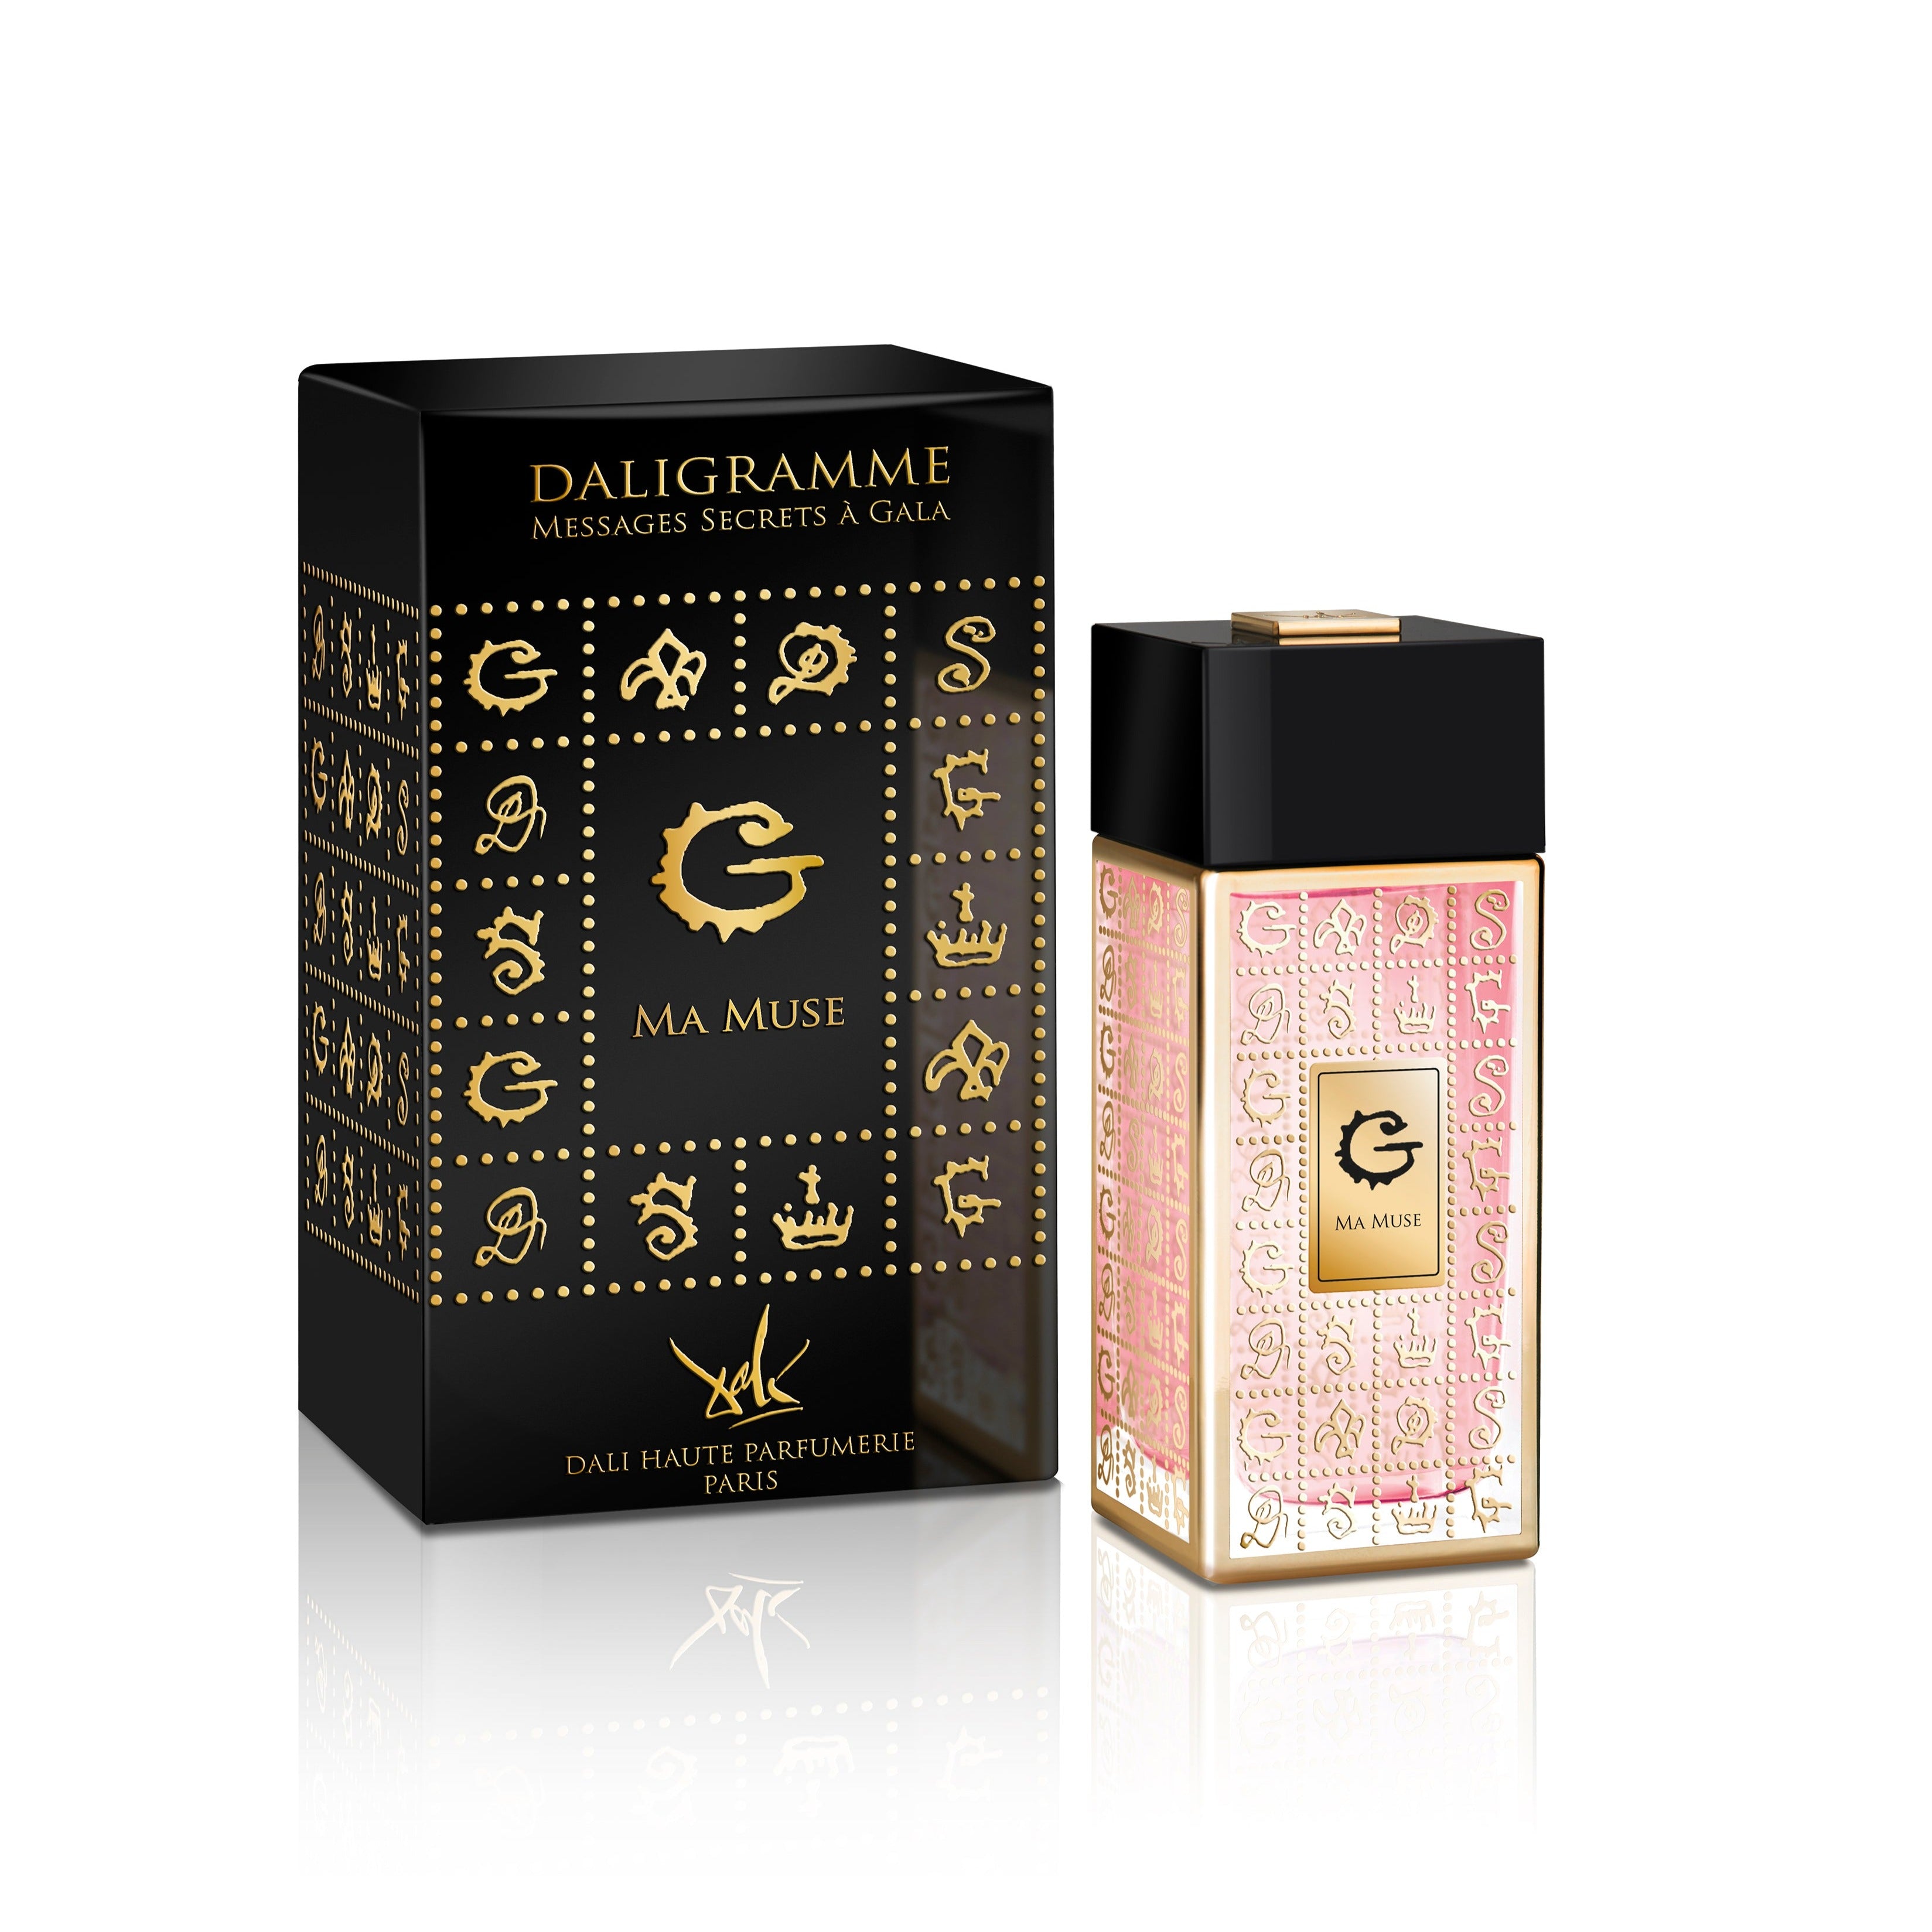 Ma Muse Eau de Parfum 100ml Bottle and Box by Dalí Haute Parfumerie